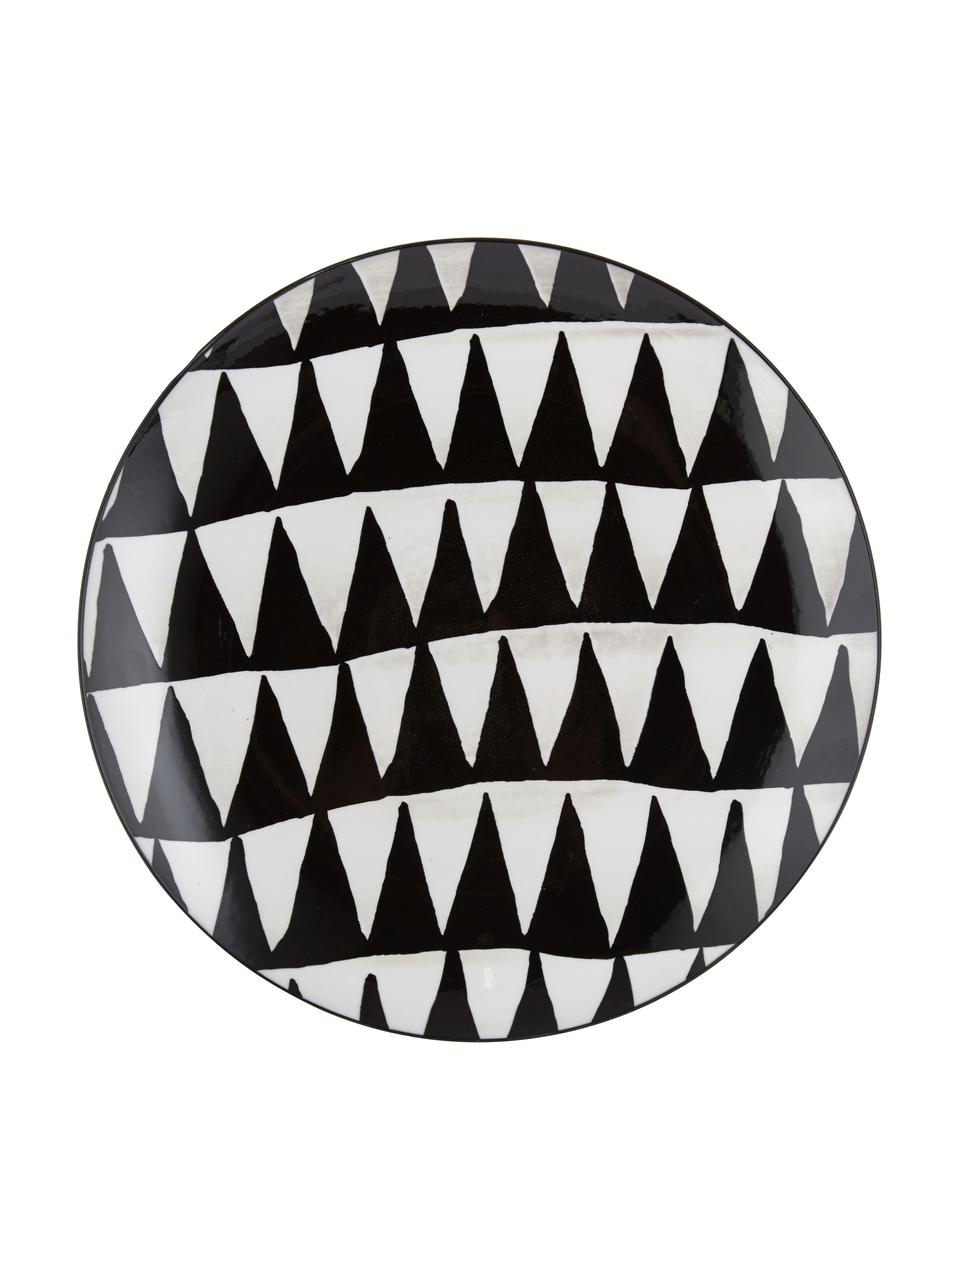 Serviesset met patroon Mokala in zwart/wit, 6 personen (18-delig), Porselein, Zwart, wit, Set met verschillende formaten